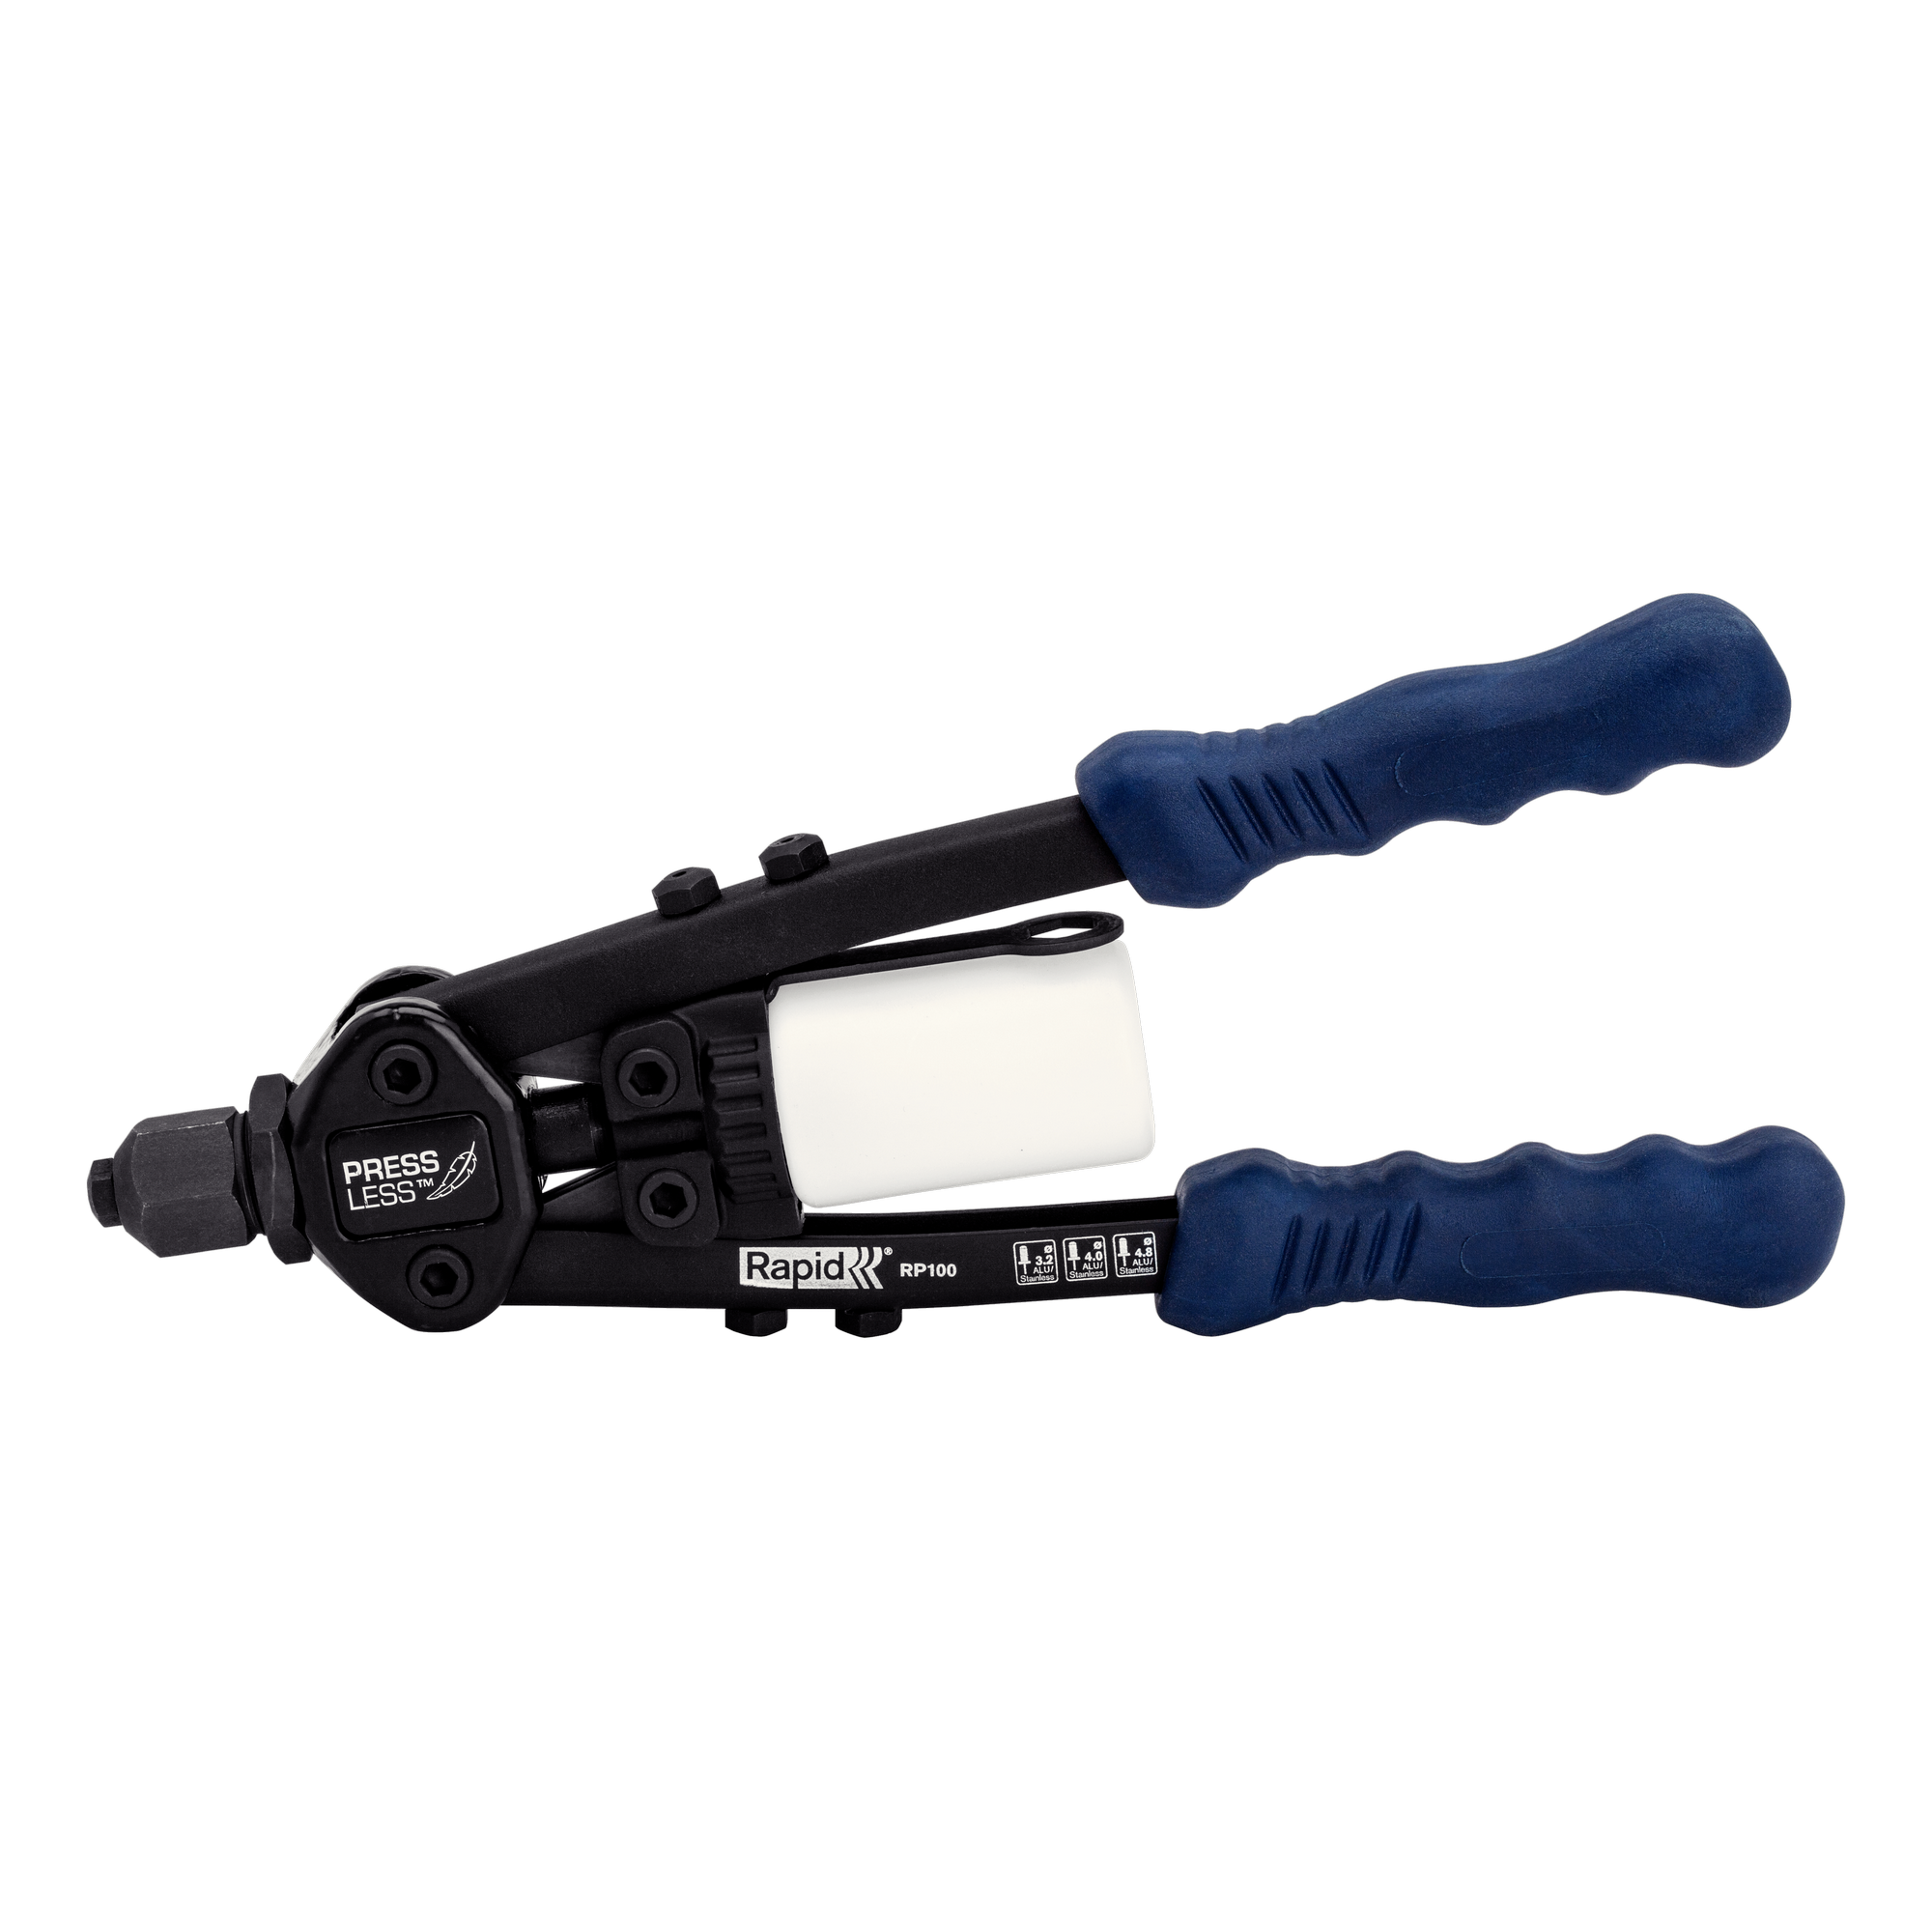 Hochleistungs-Blindnietzange 'RP100' blau/schwarz für Nieten mit Ø 3,2 - 4,8 mm + product picture